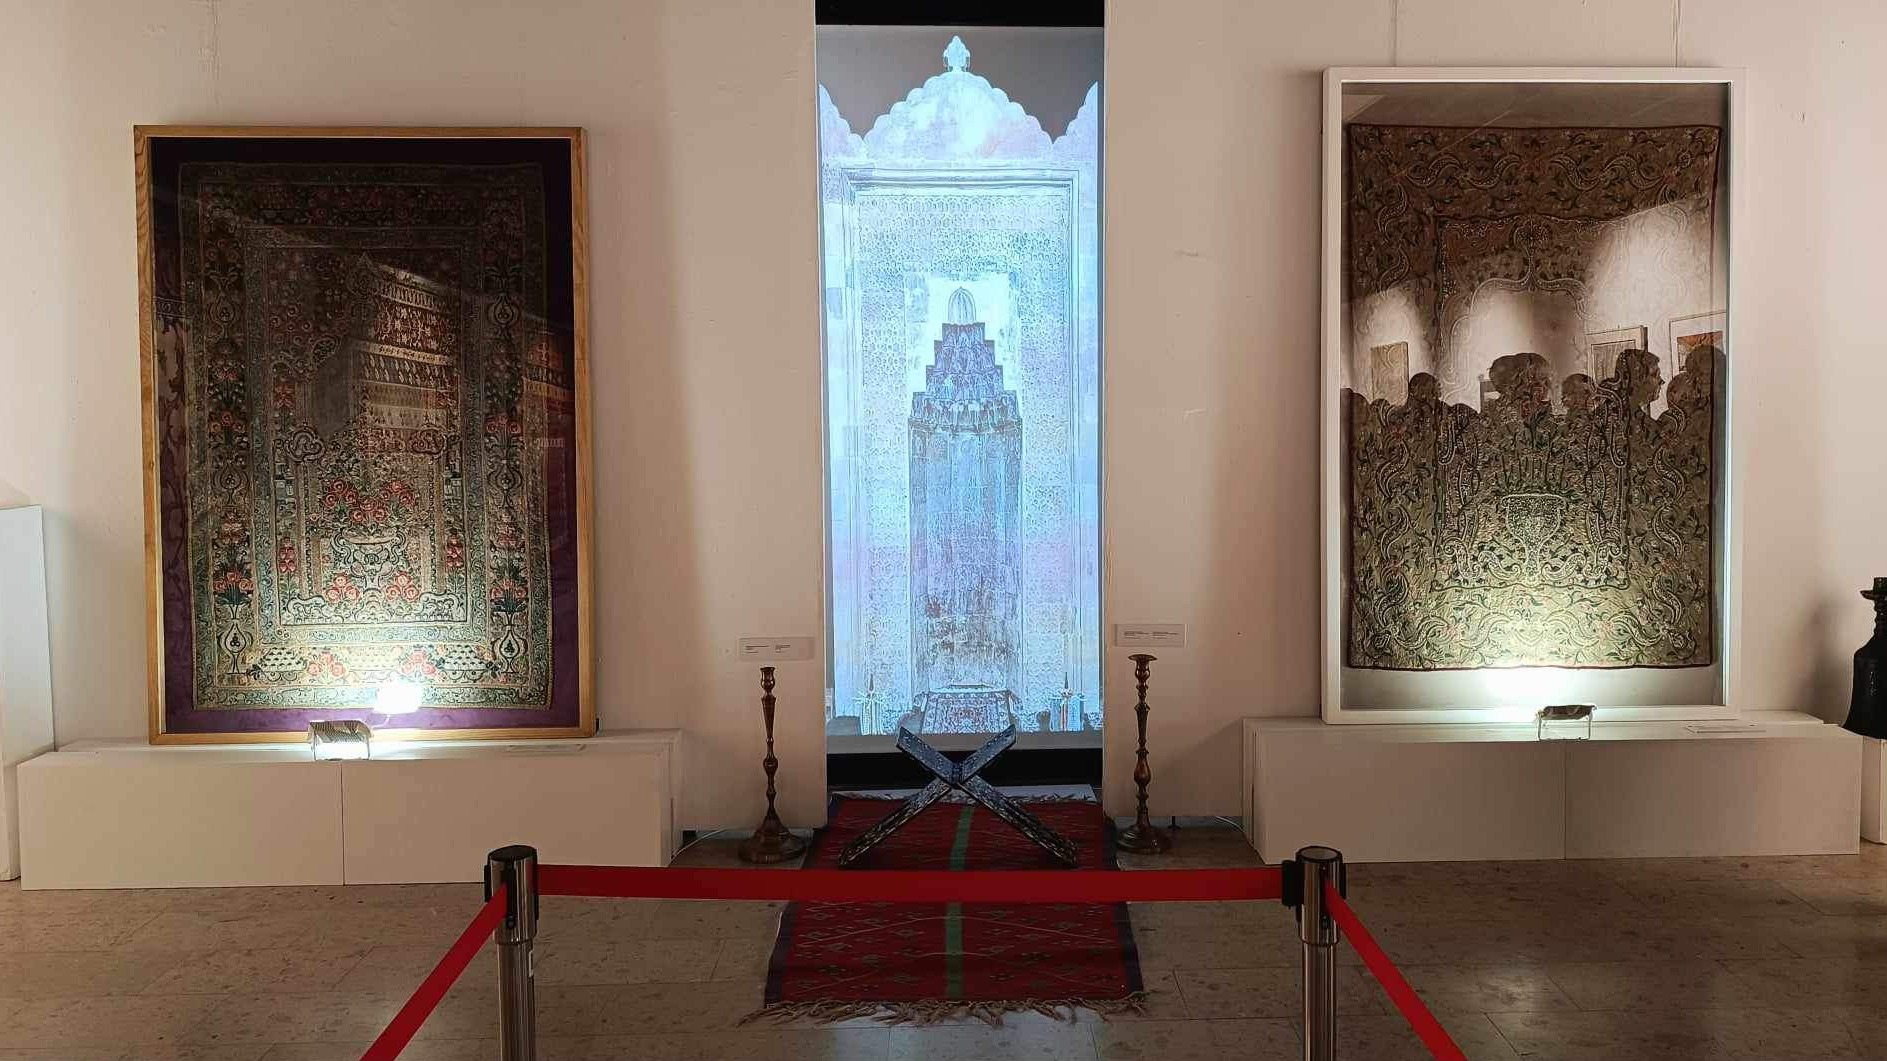 U okviru izložbe "Pod nebom vedre vjere" digitalna selekcija džamijskih kupola i mihraba